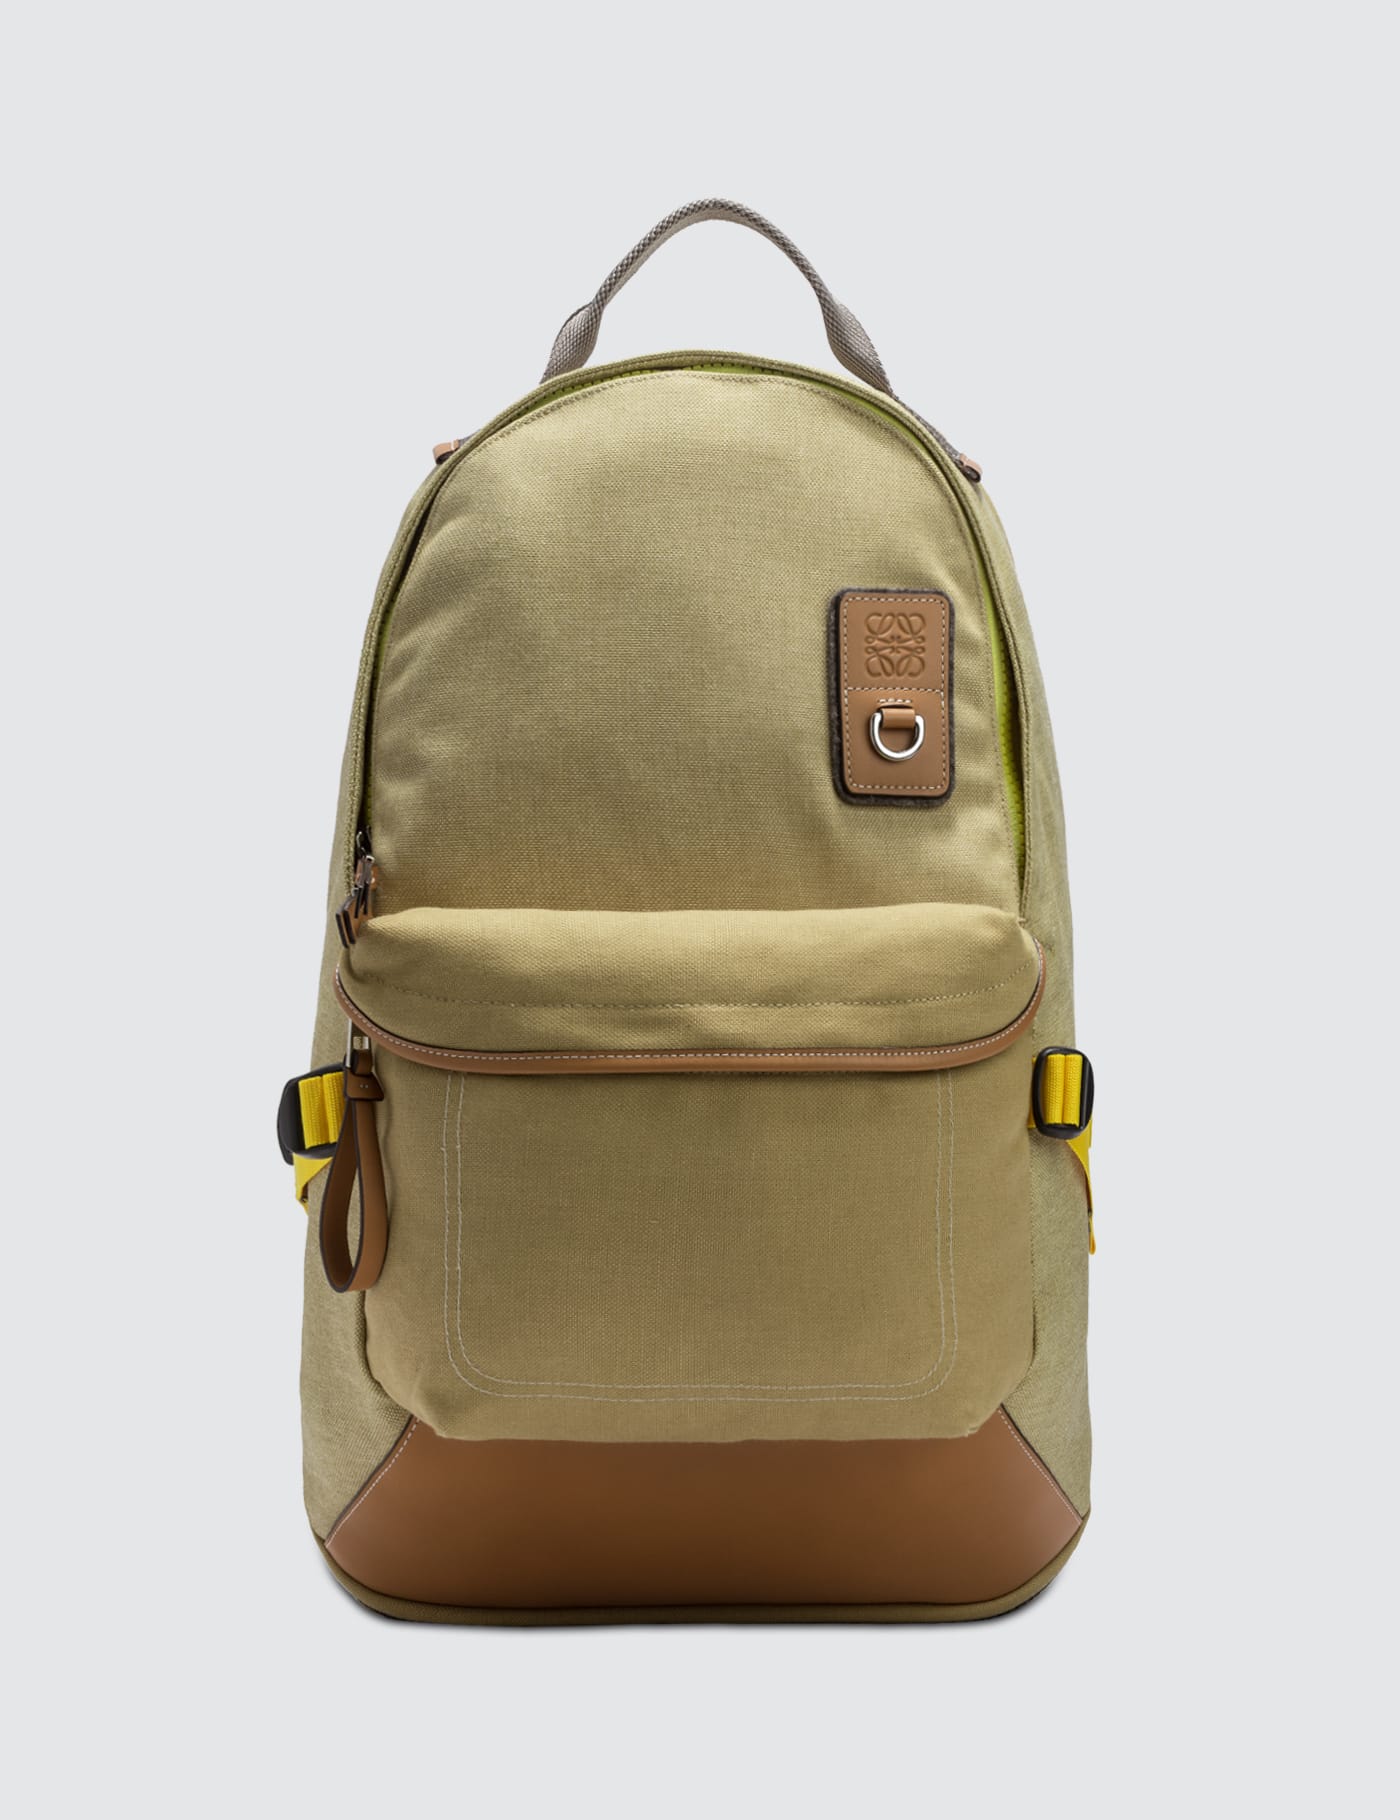 Loewe ELN Backpack | HBX